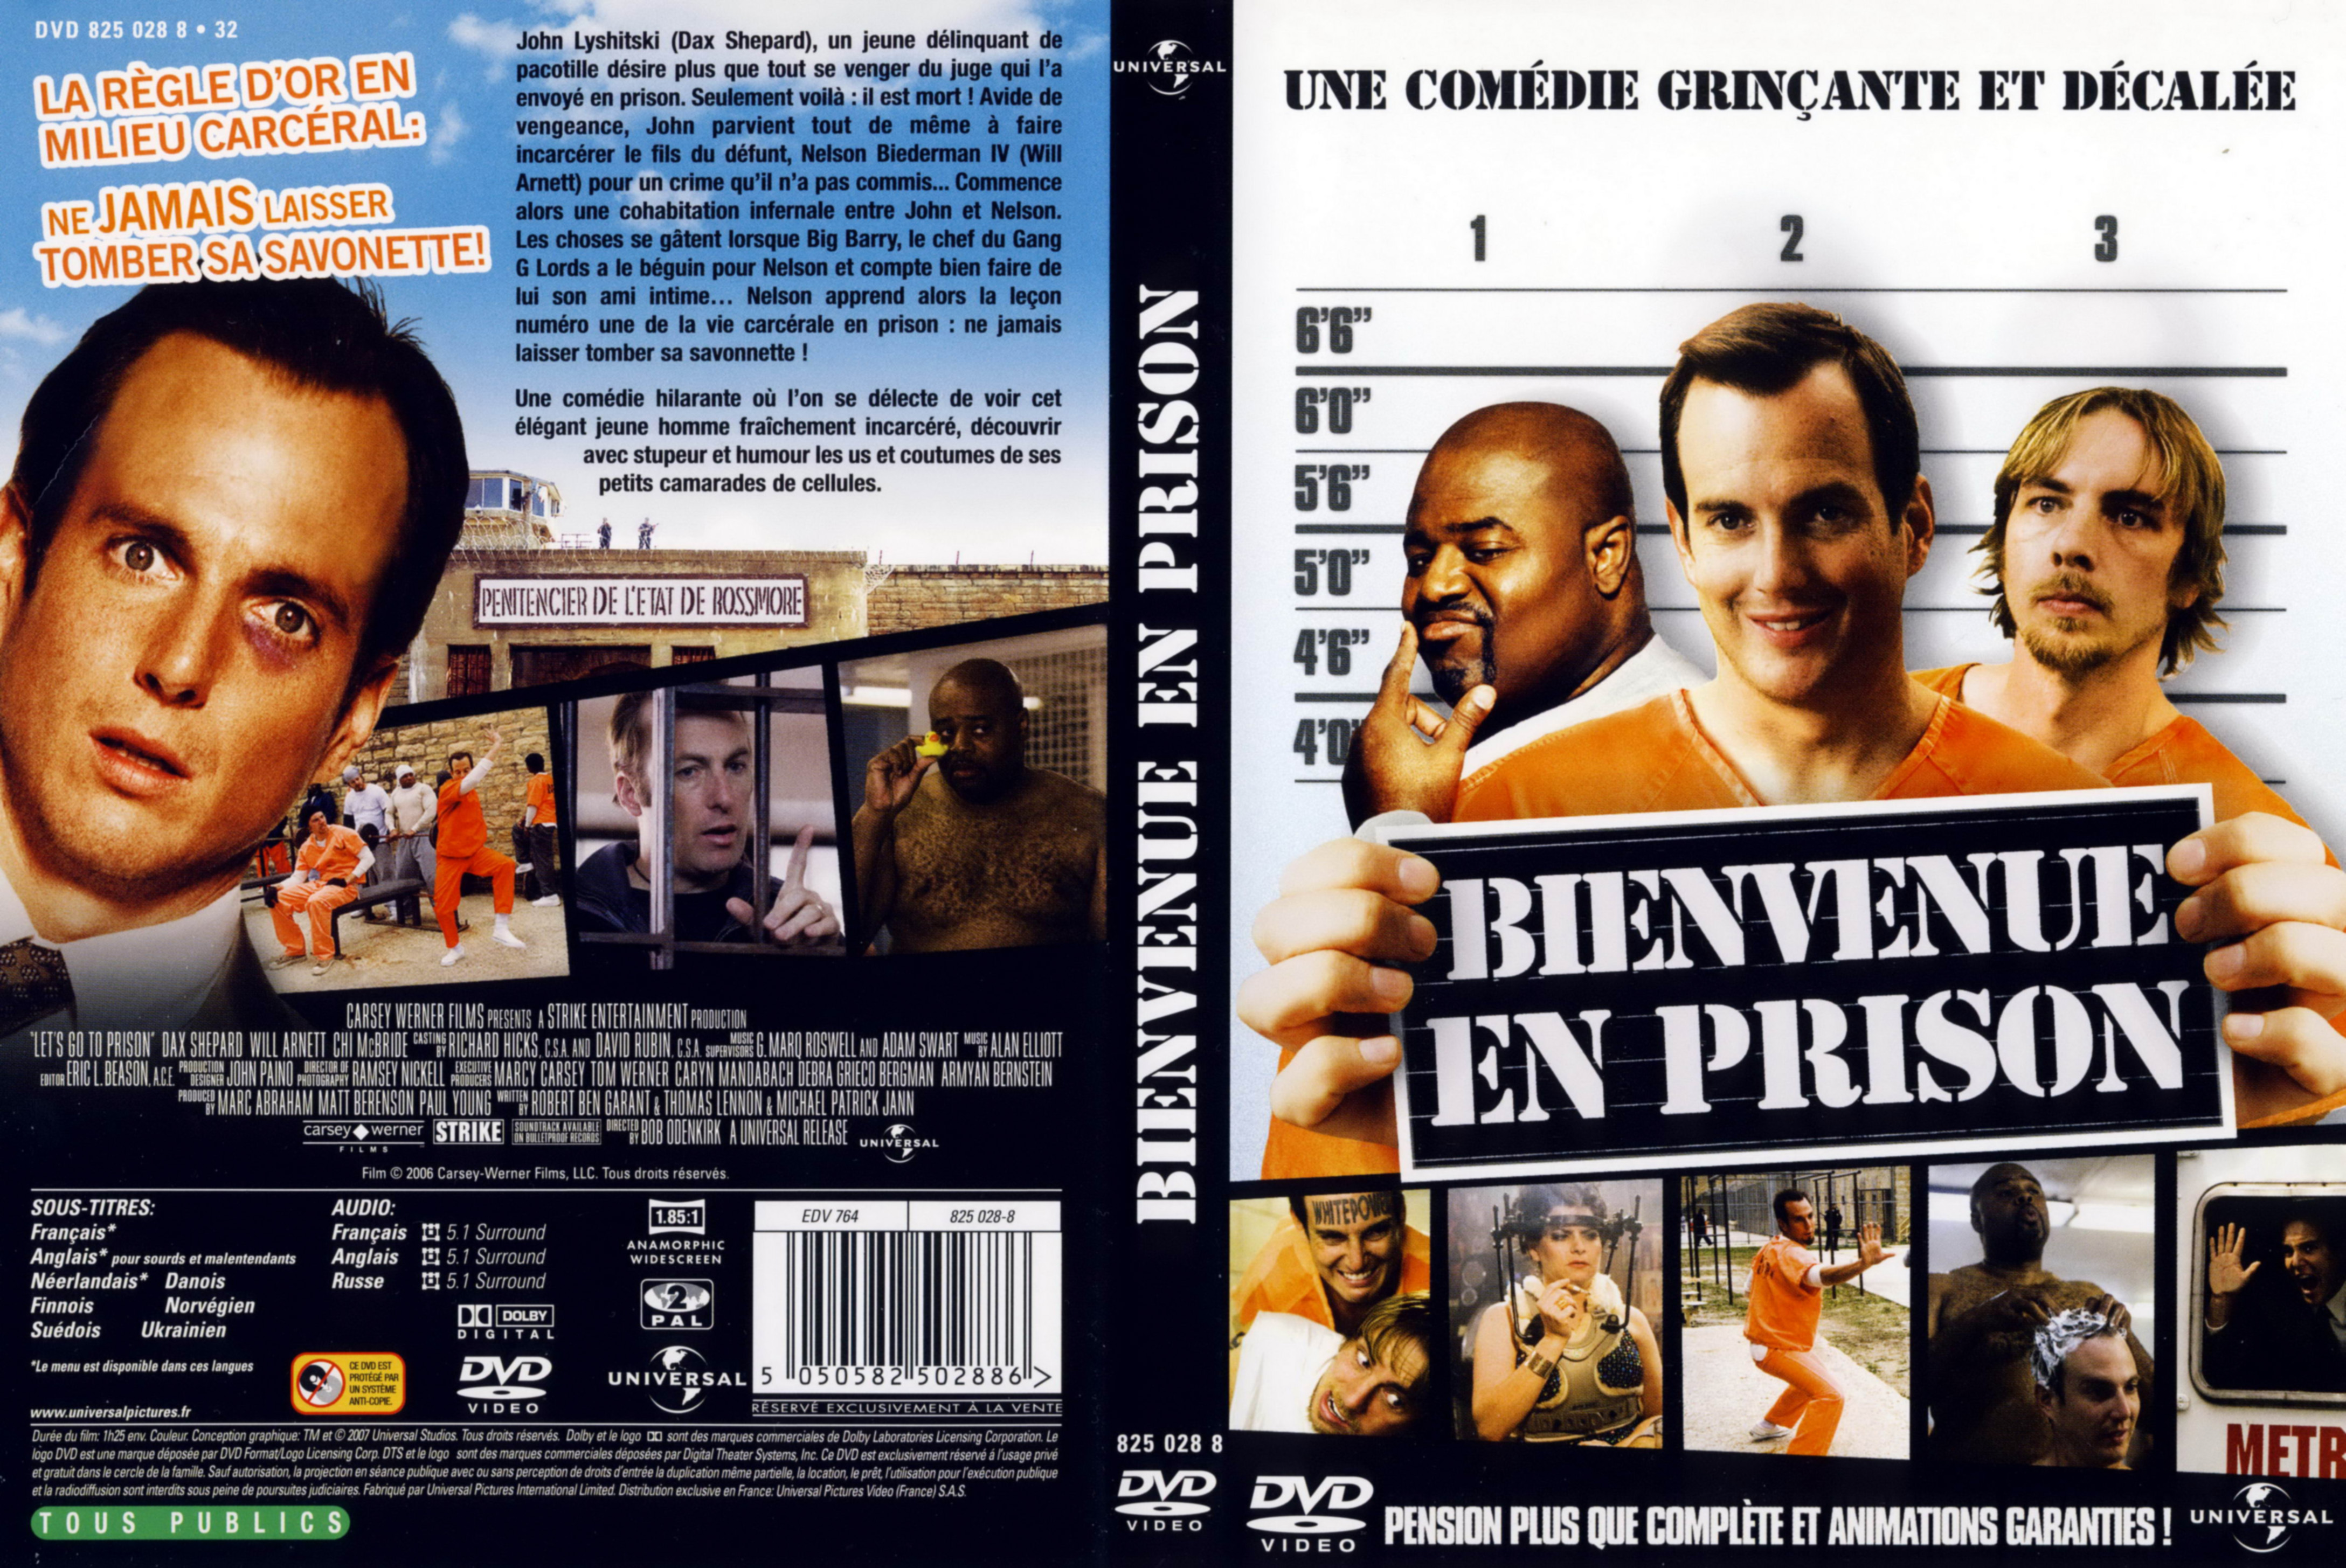 Jaquette DVD Bienvenue en prison